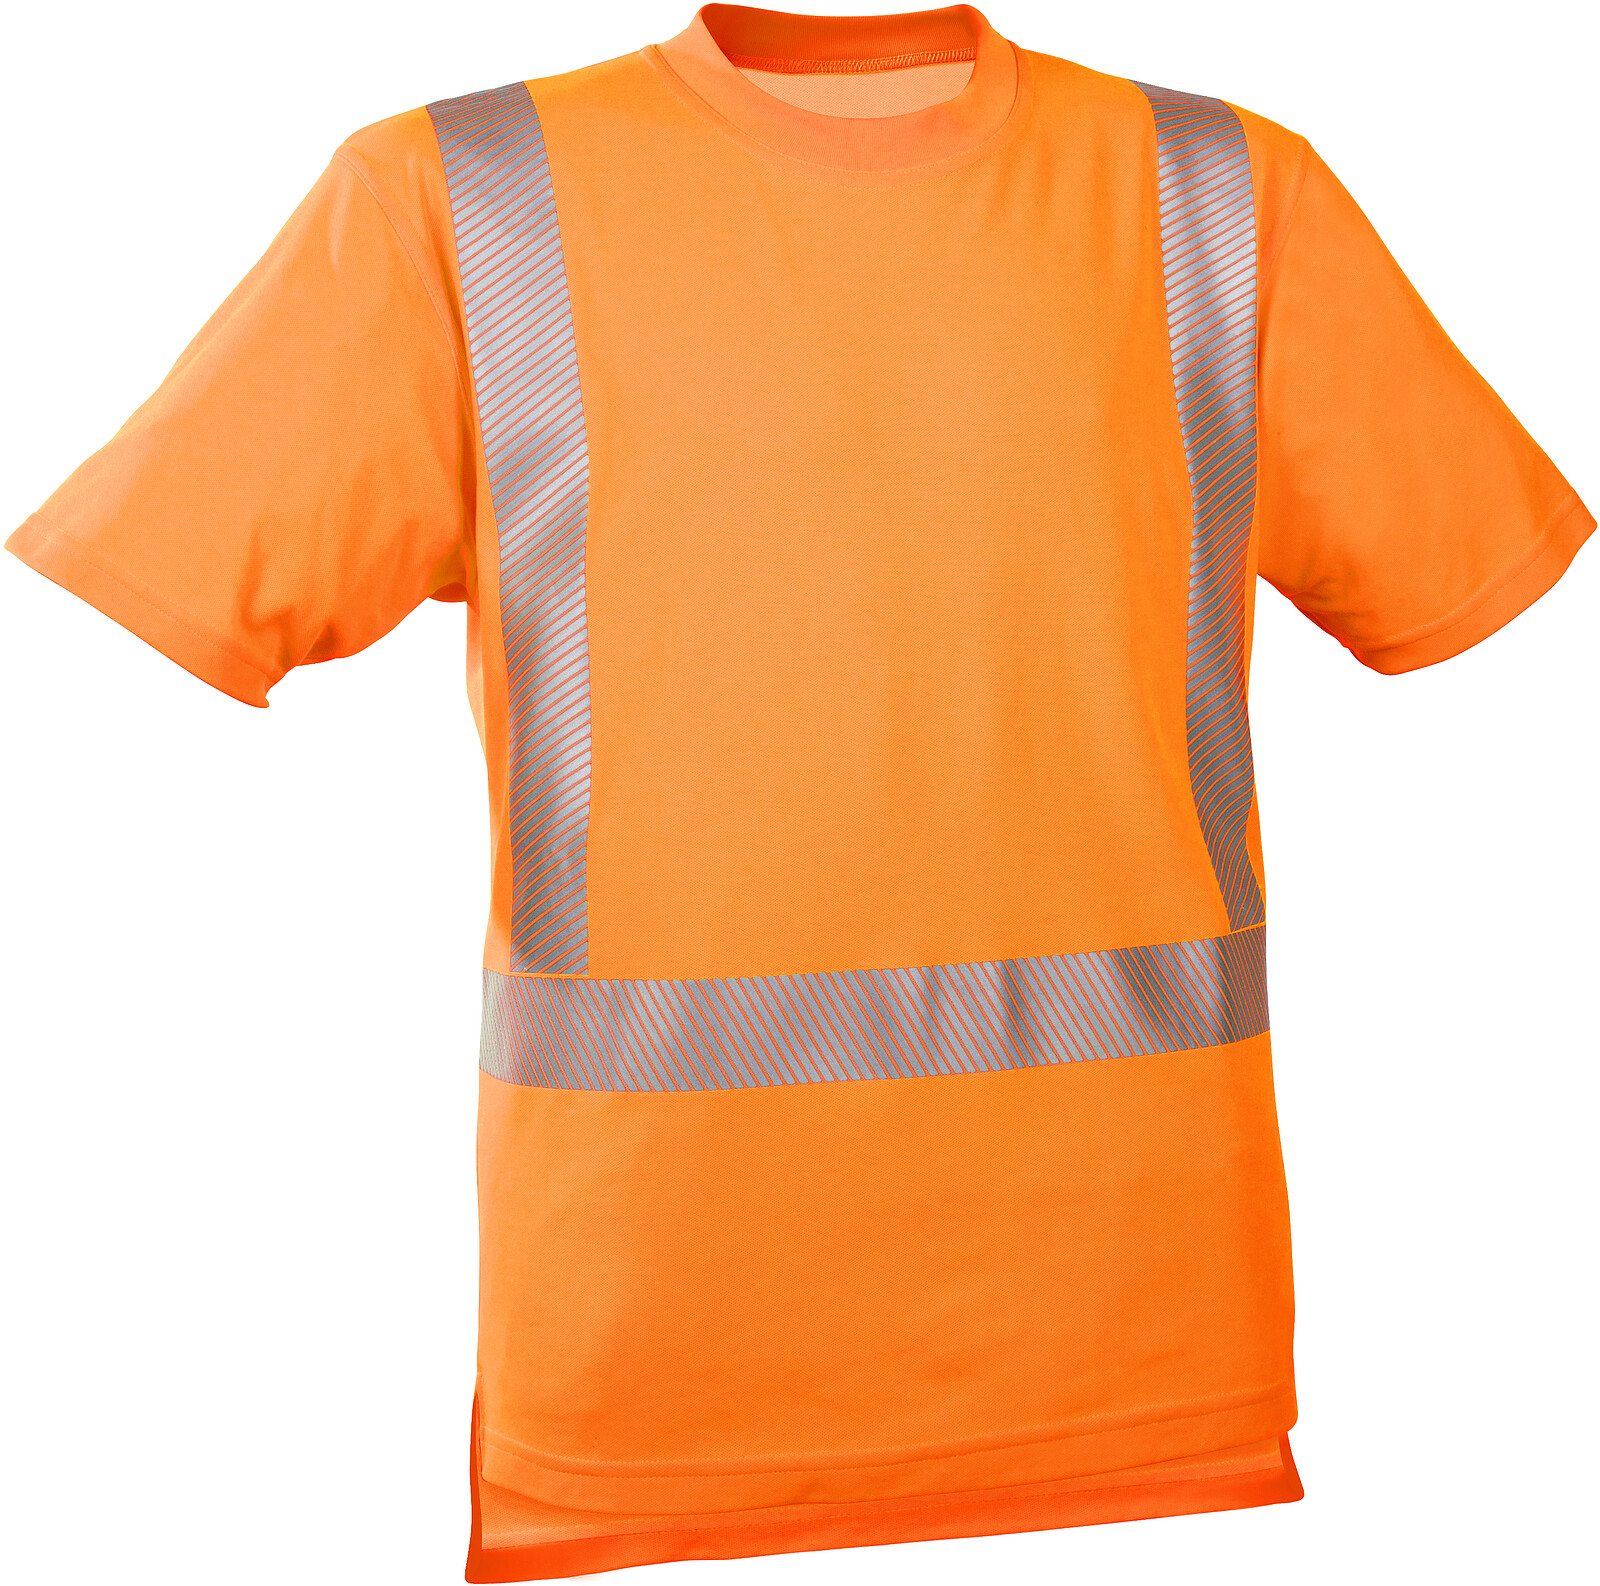 Warnschutz-T-Shirt 5-3040, warnorange, Gr. S 